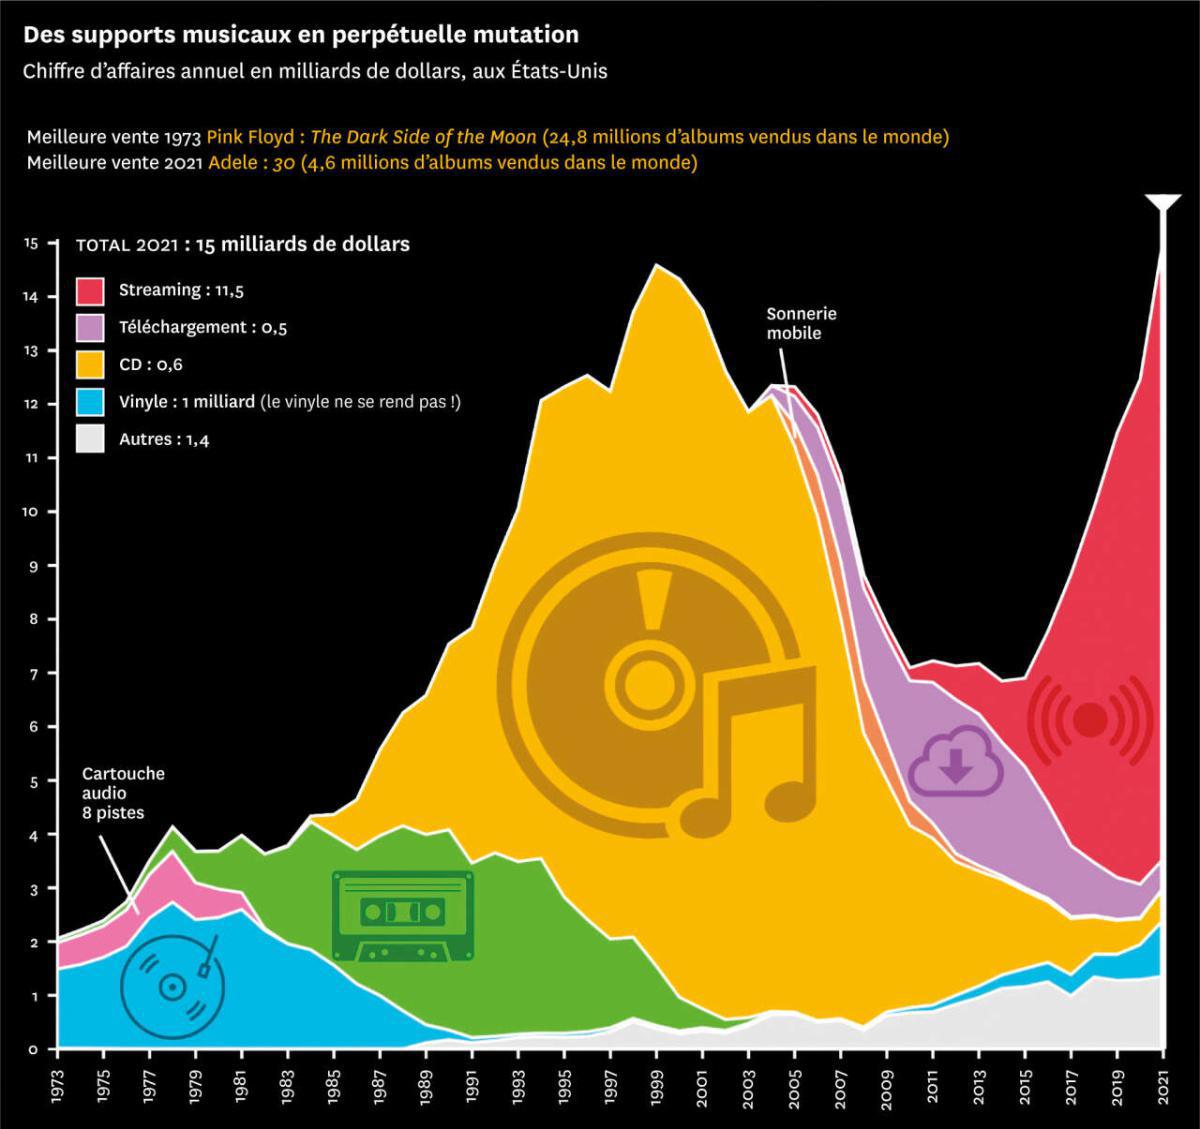 "Du vinyle au virtuel : l'évolution de la consommation musicale sur un demi-siècle"